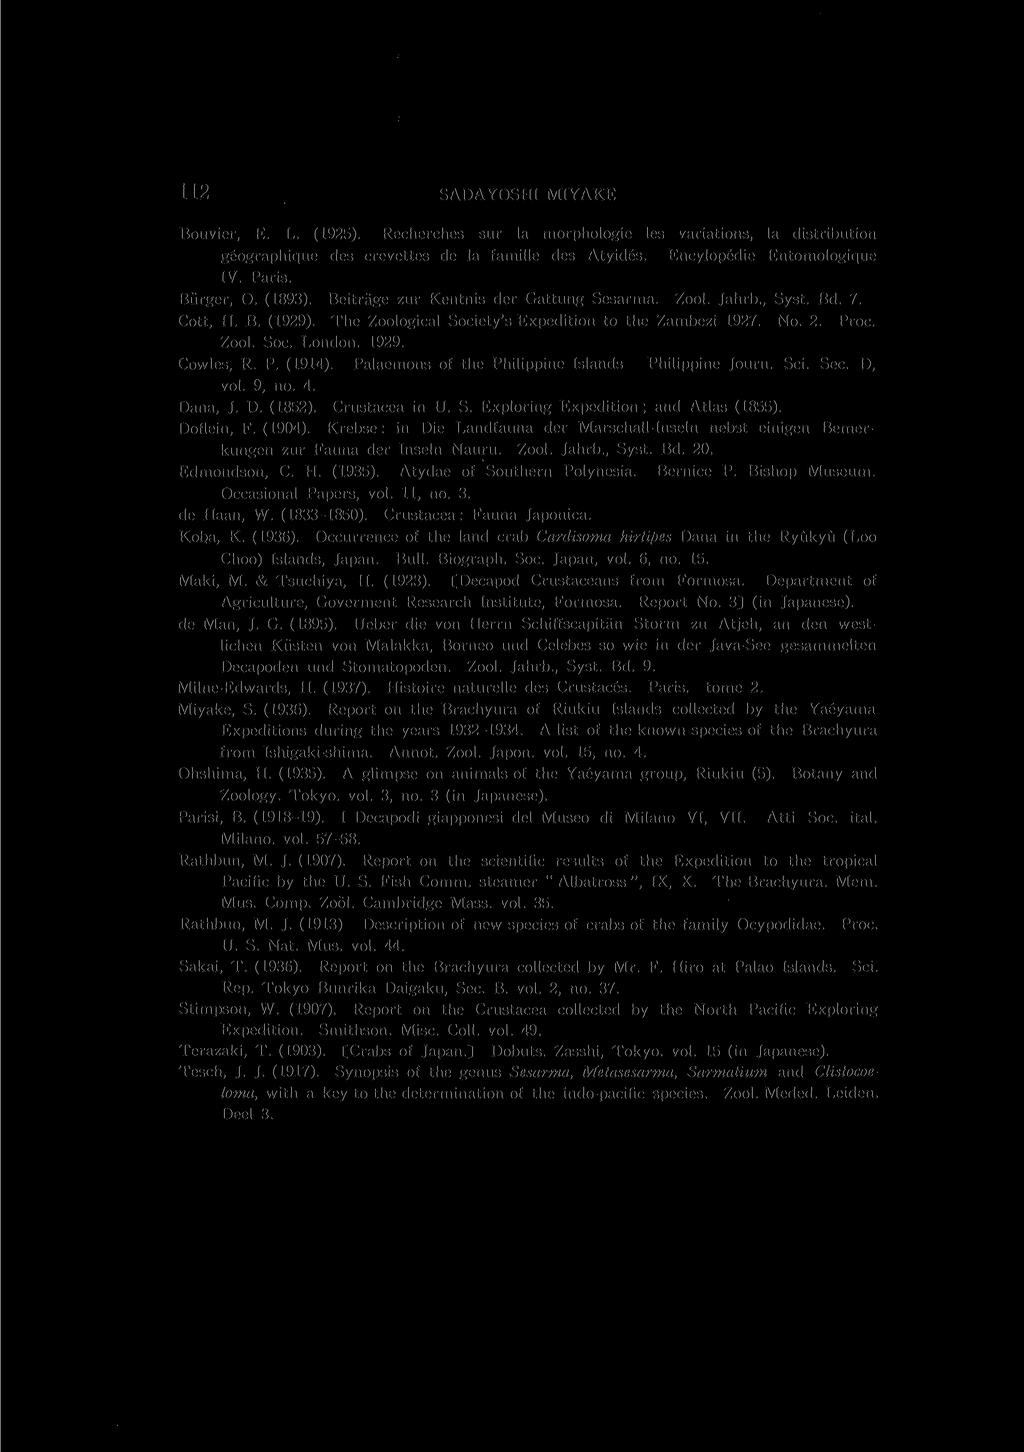 112 SADAYOSHI MIYAKE Bouvier, E. L. (1925). Recherches sur la morphologie les variations, la distribution geographique des crevettes de la famille des Atyides. Encylopedie Entomologique IV. Paris.